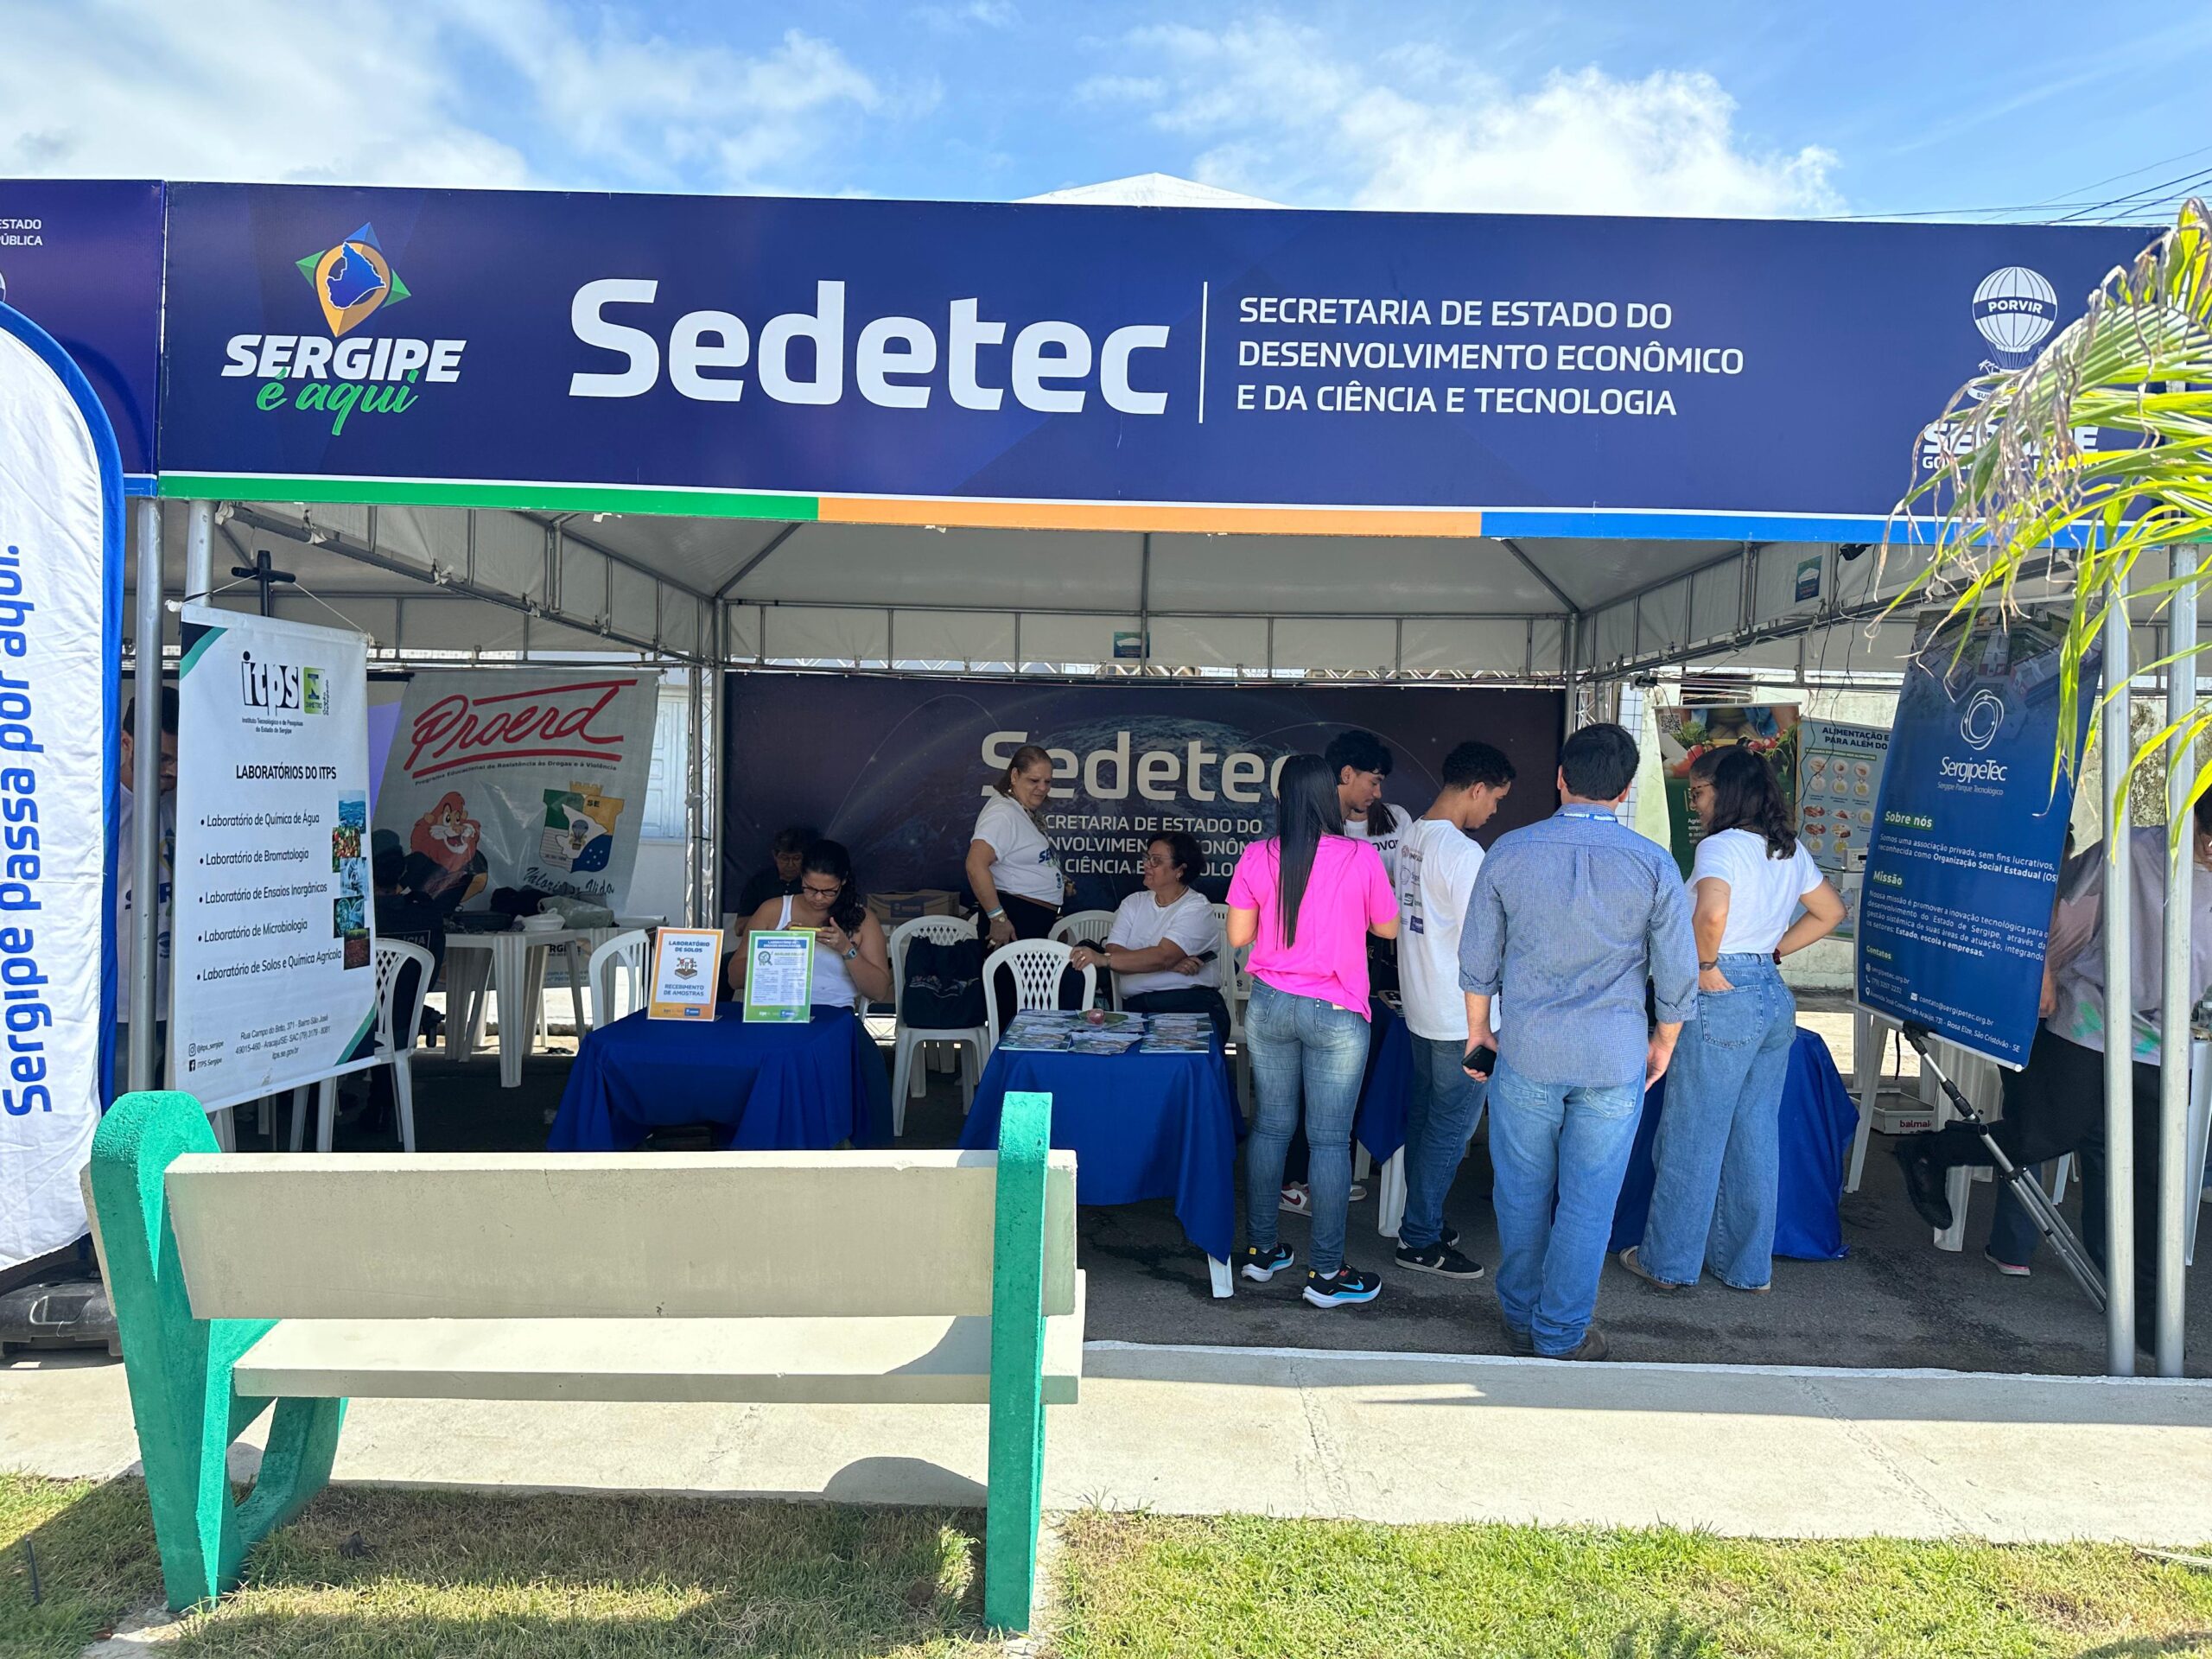 Sistema Sedetec promove divulgação tecnológica durante ‘Sergipe é aqui’ em Itabi